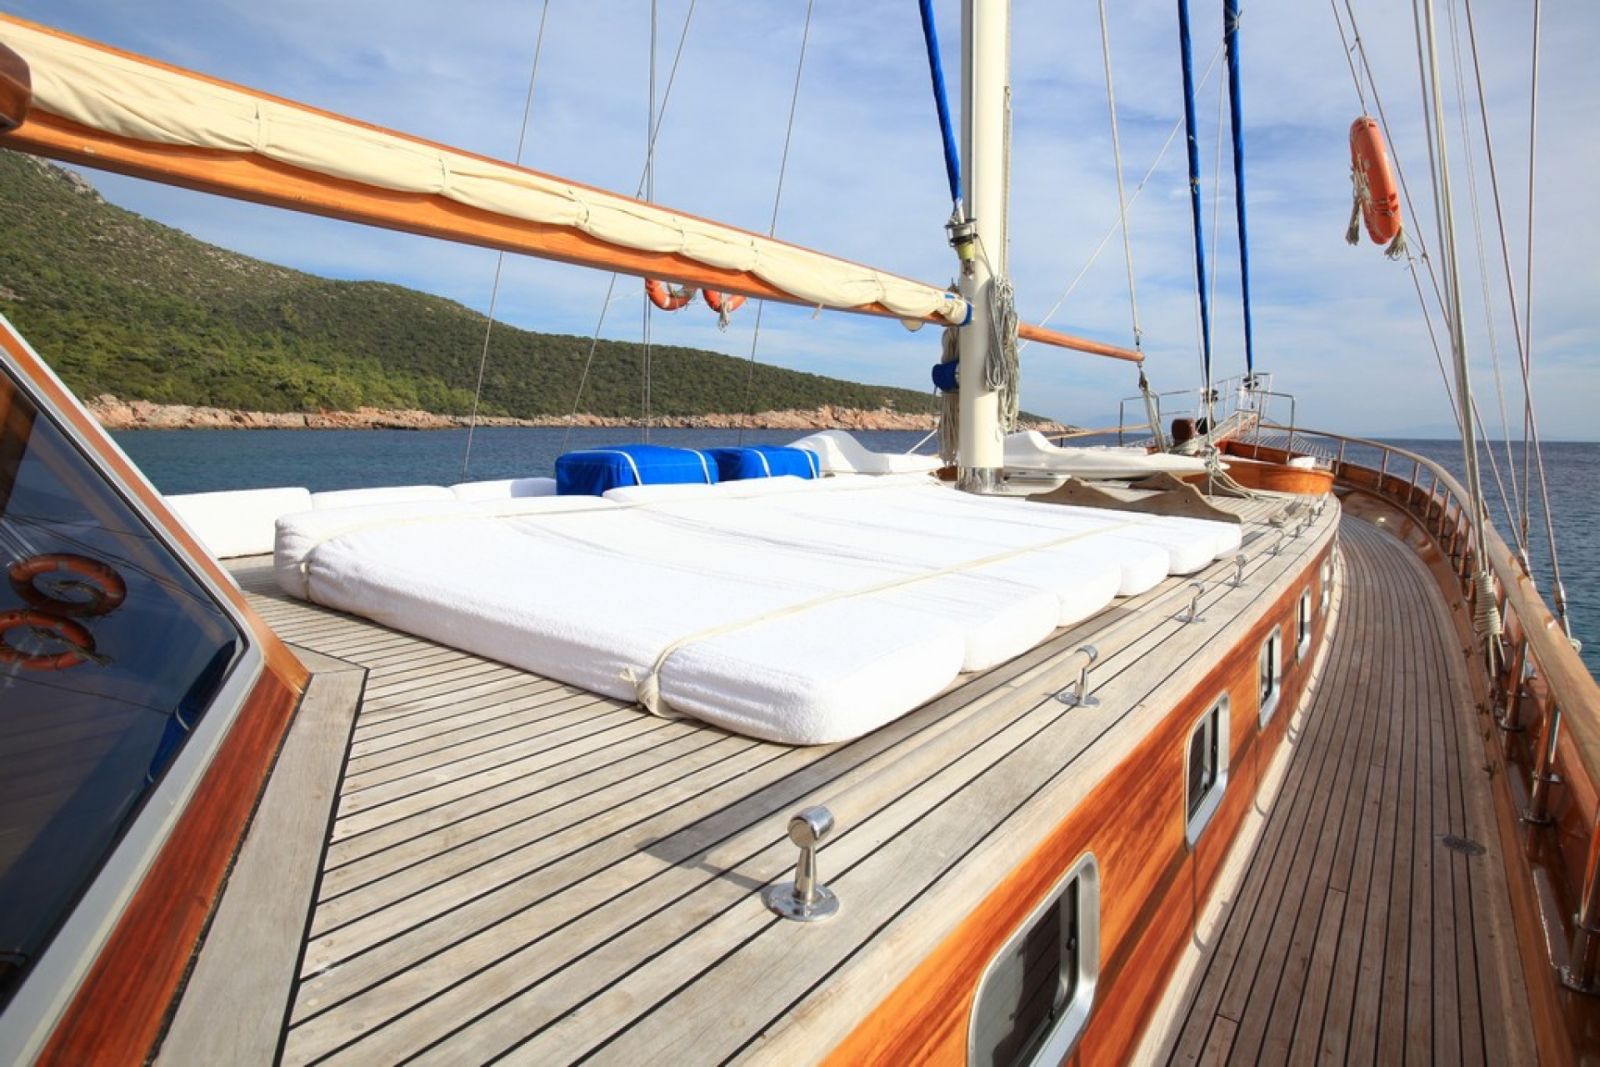 Sunbathing on board Kaya Guneri III